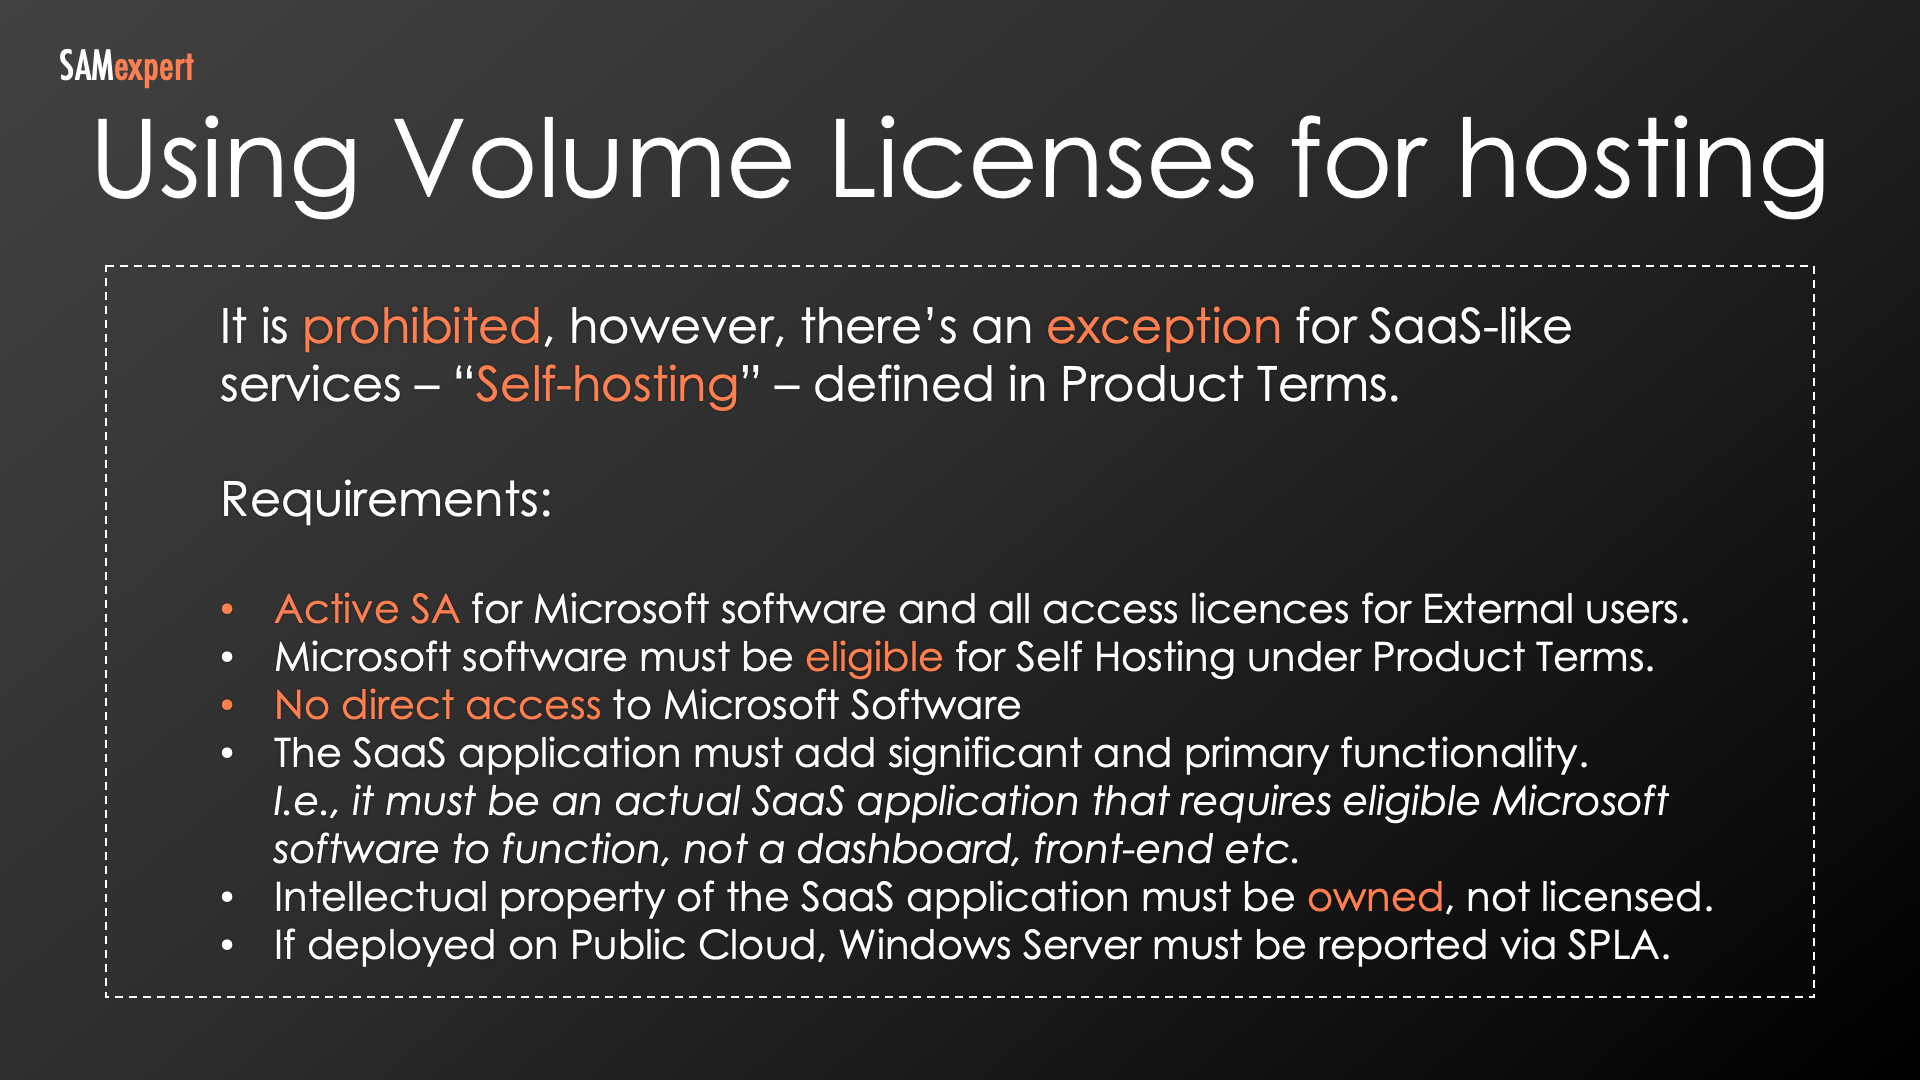 Using Microsoft volume licenses for hosting (self-hosting)